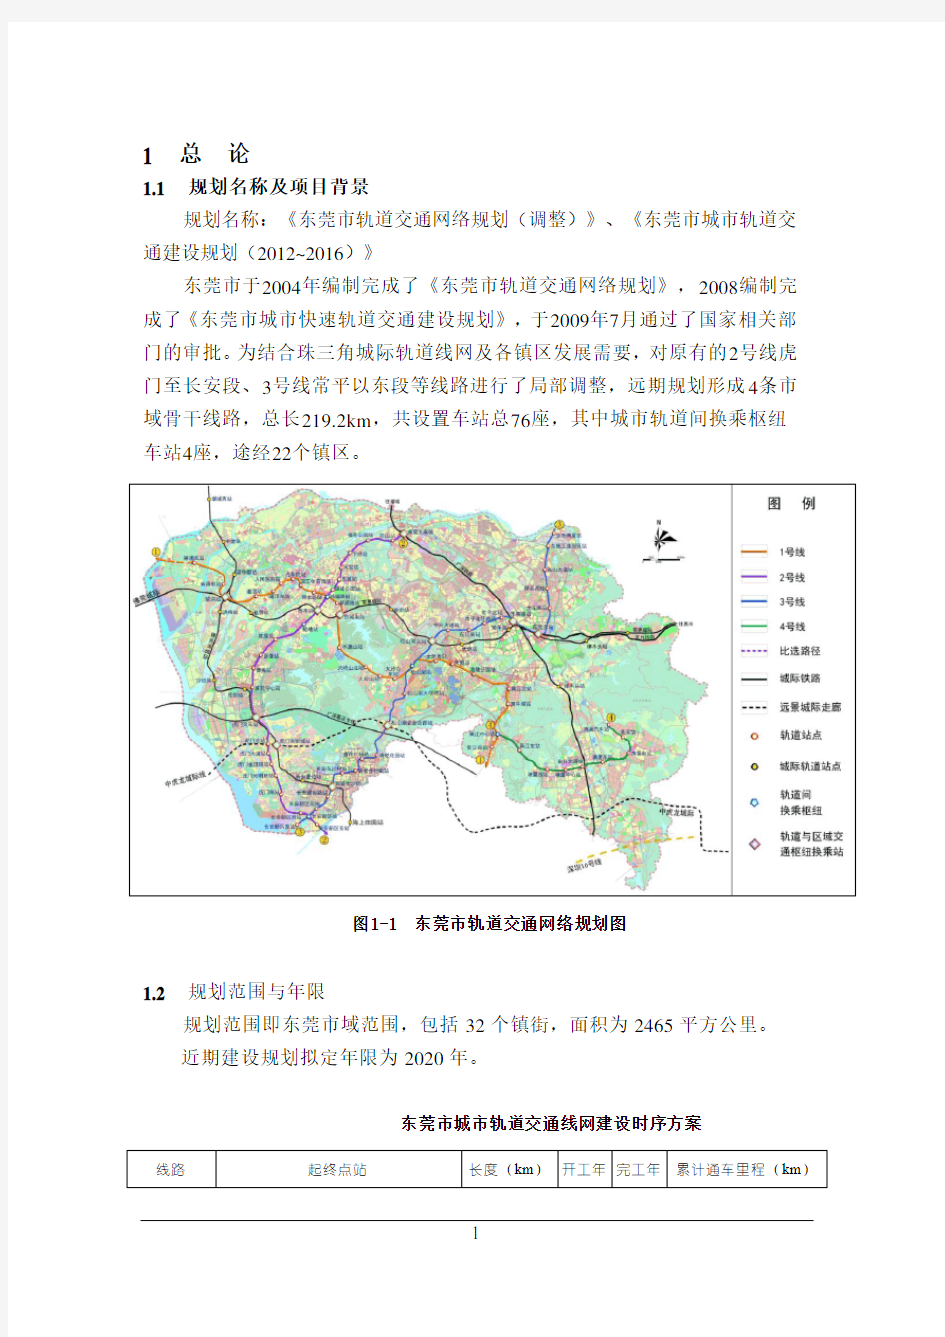 东莞 地铁轻轨路线图 详细